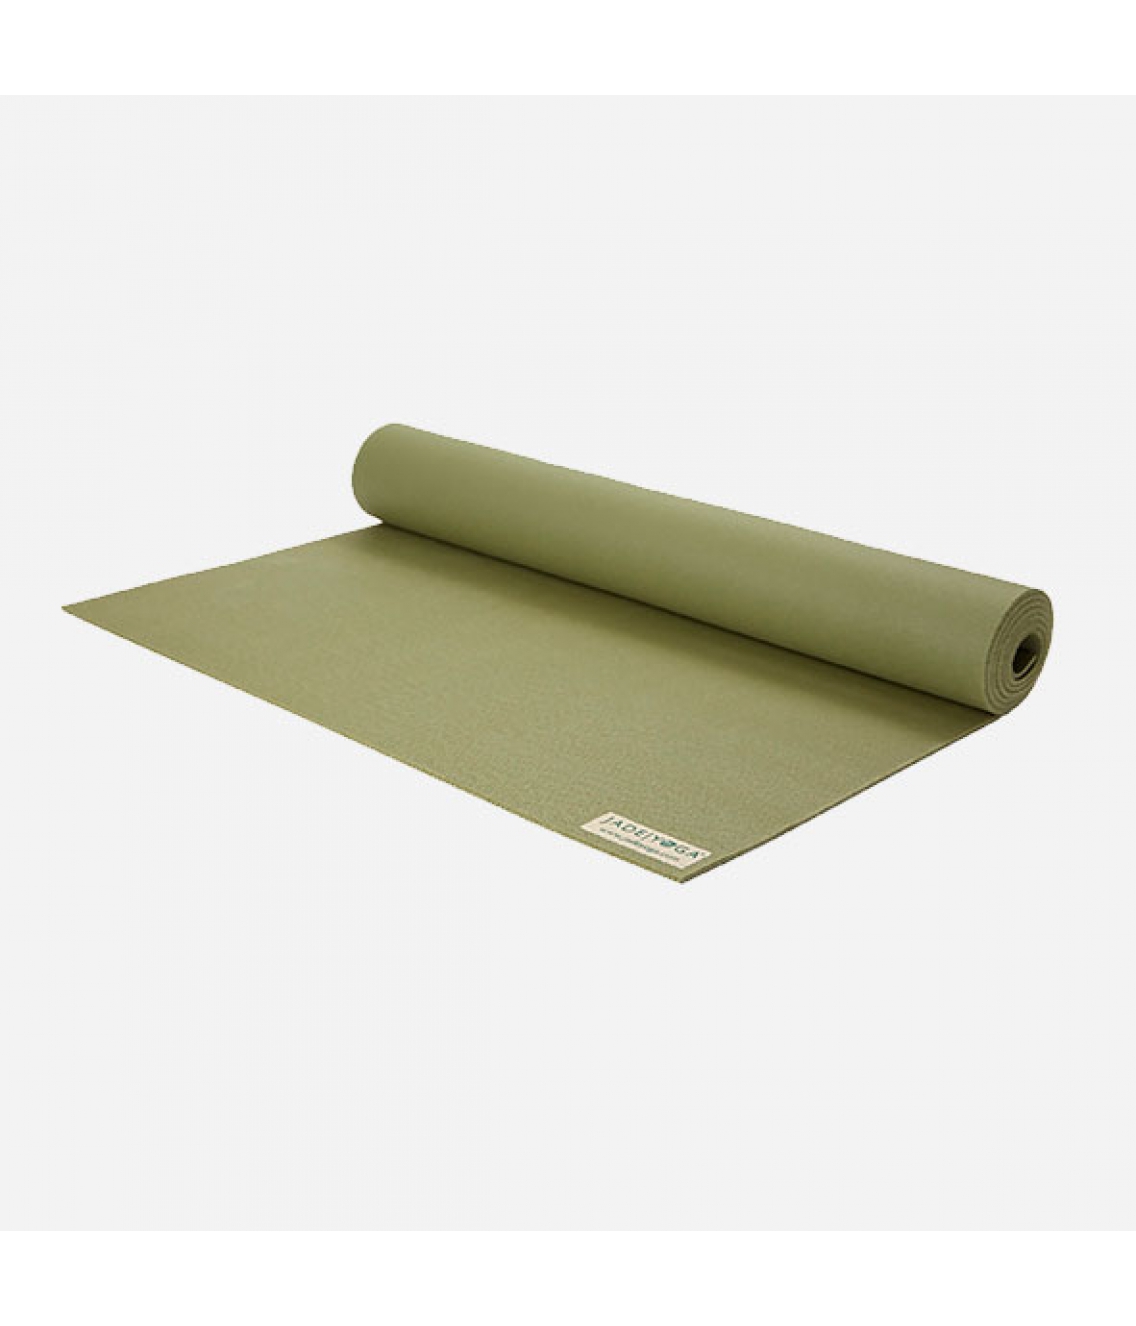 Каучуковый коврик Jade Harmony 173*60*0,5 см - Оливковый